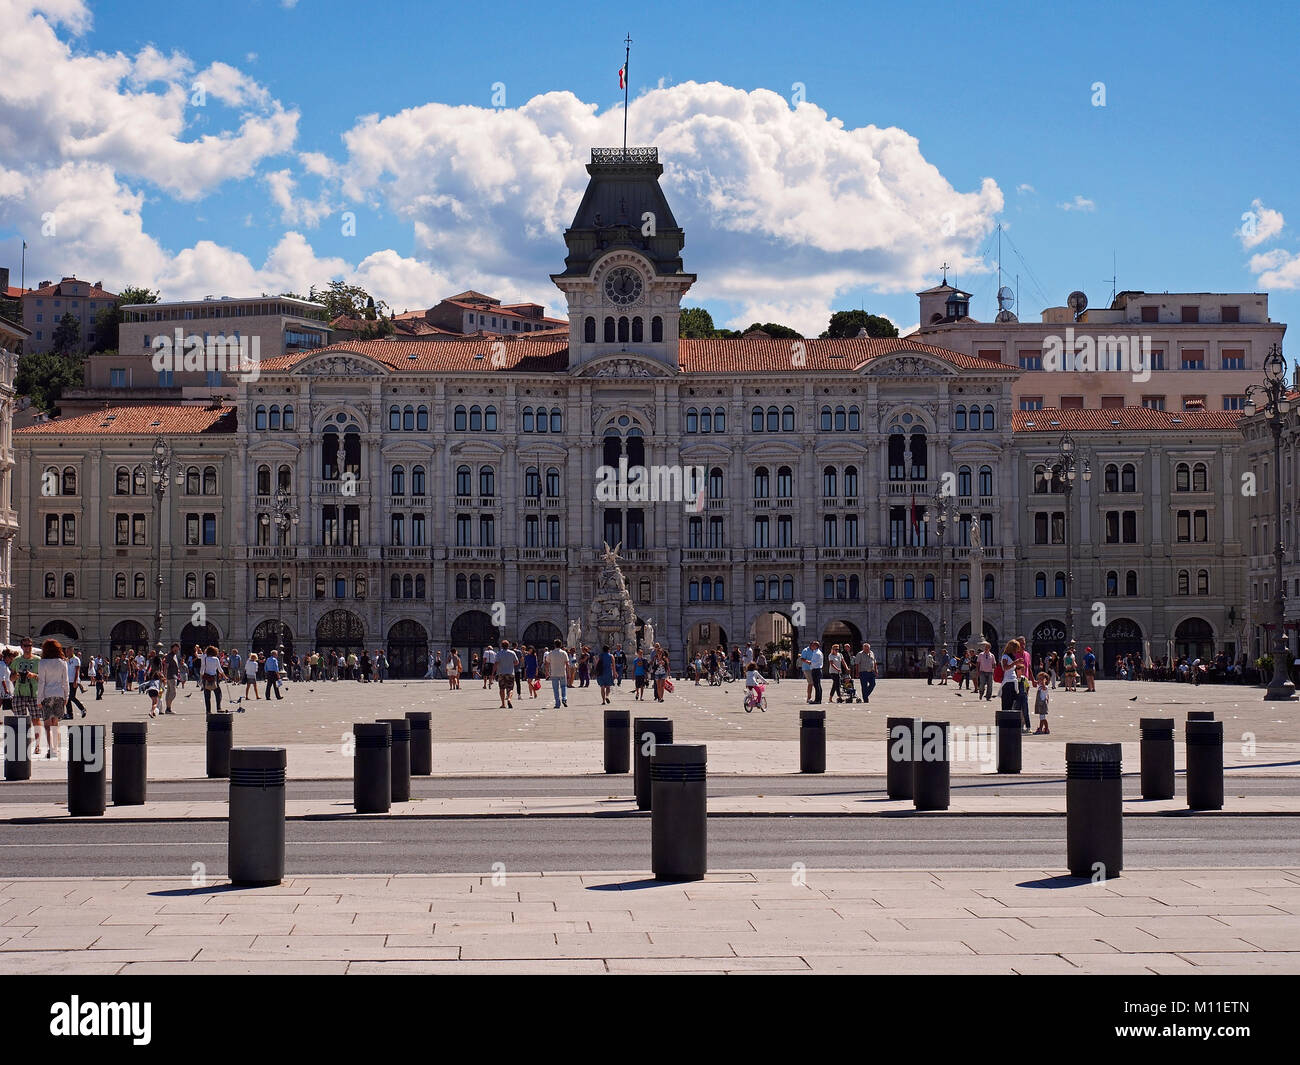 Trieste. The City Hall building in Piazza Unità d'Italia. Stock Photo